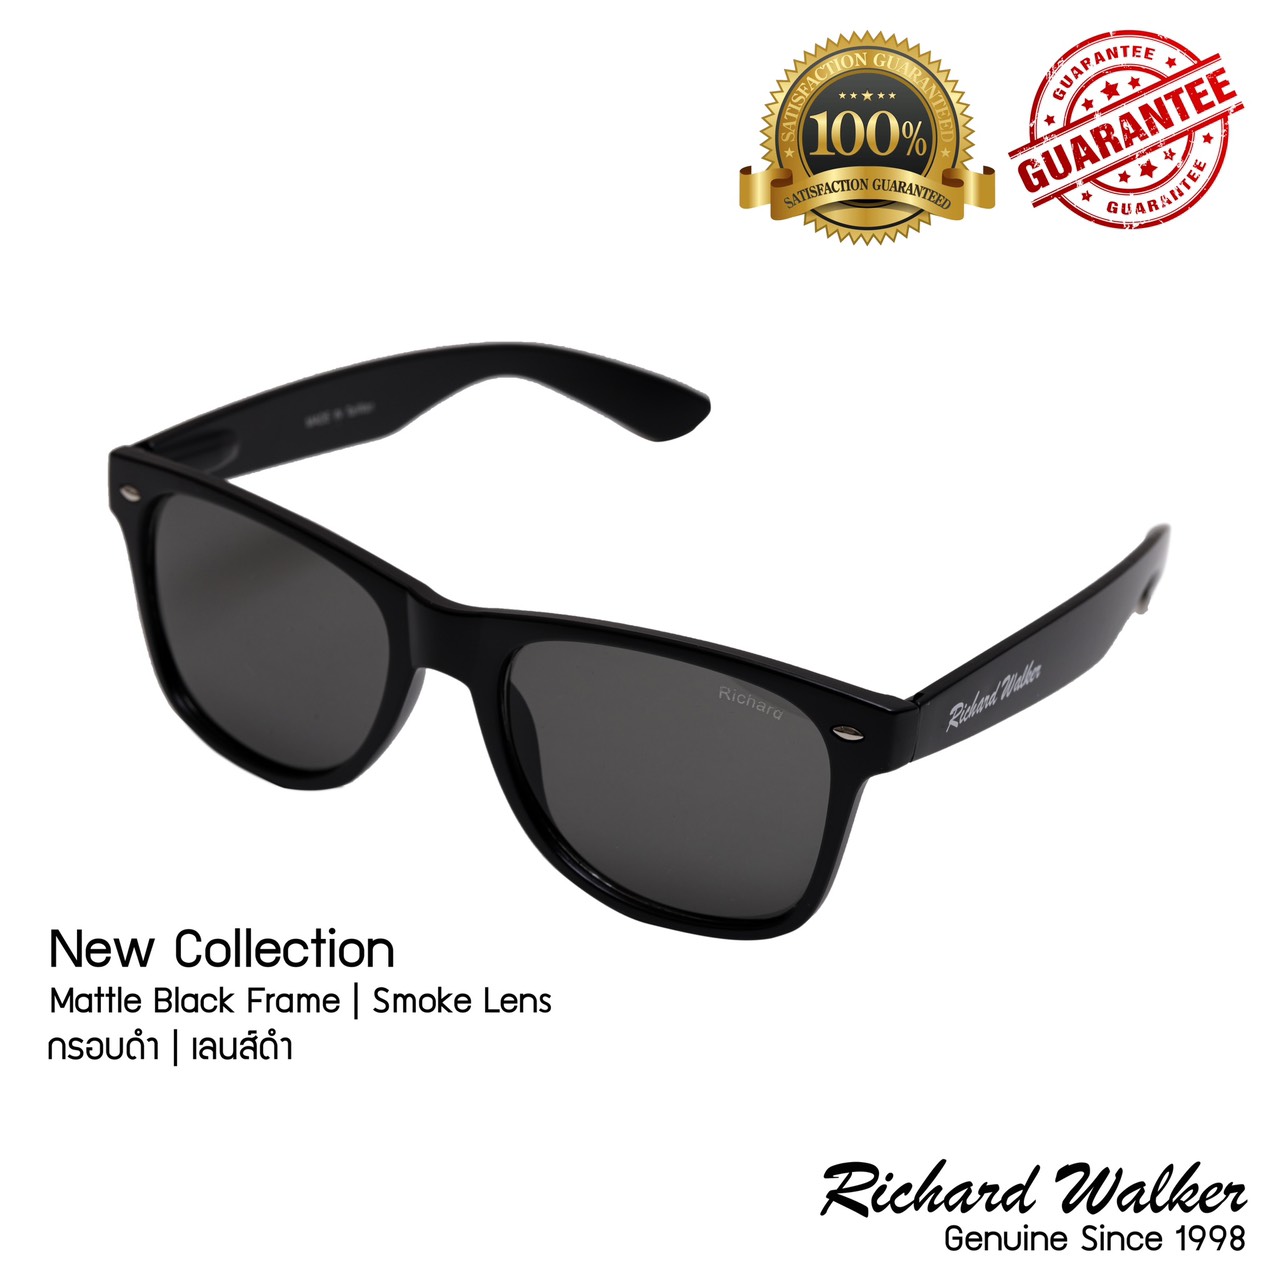 แว่นตากันแดด Richard Walker Sunglasses รุ่น RW1001 New Collection 400UV Mattle Black Frame Smoke Lens กรอบดำ เลนส์ดำ แว่นตากันแดด แฟชั่น ขายดีที่สุด